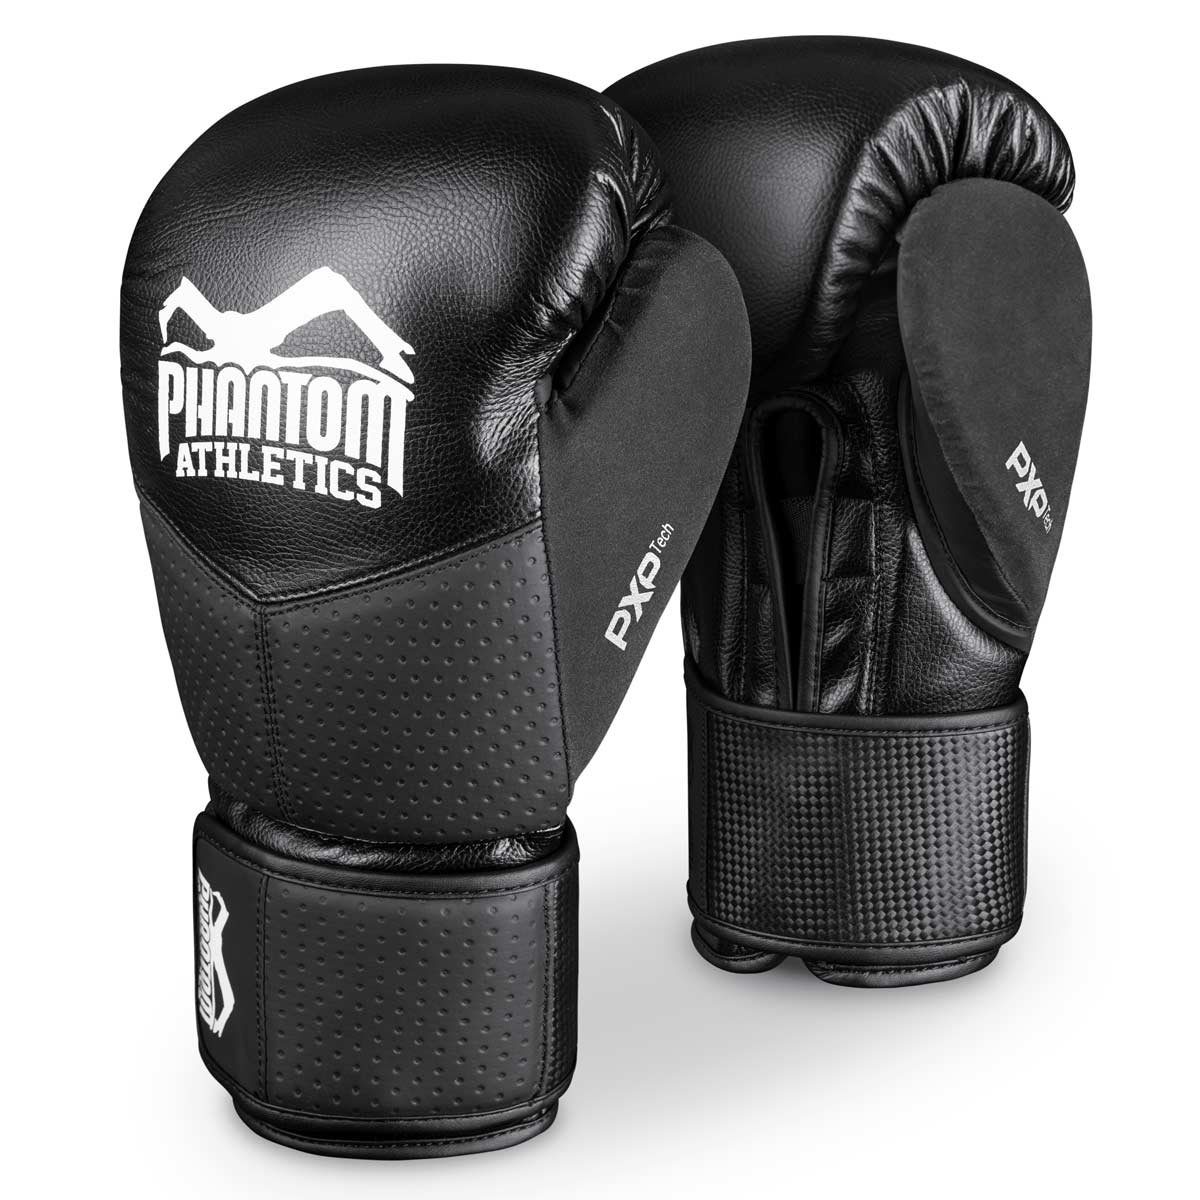 As luvas de boxe Phantom RIOT PRO. Ideal para seus treinamentos e competições de artes marciais. Ajuste perfeito e qualidade superior para treinamento e sparring.